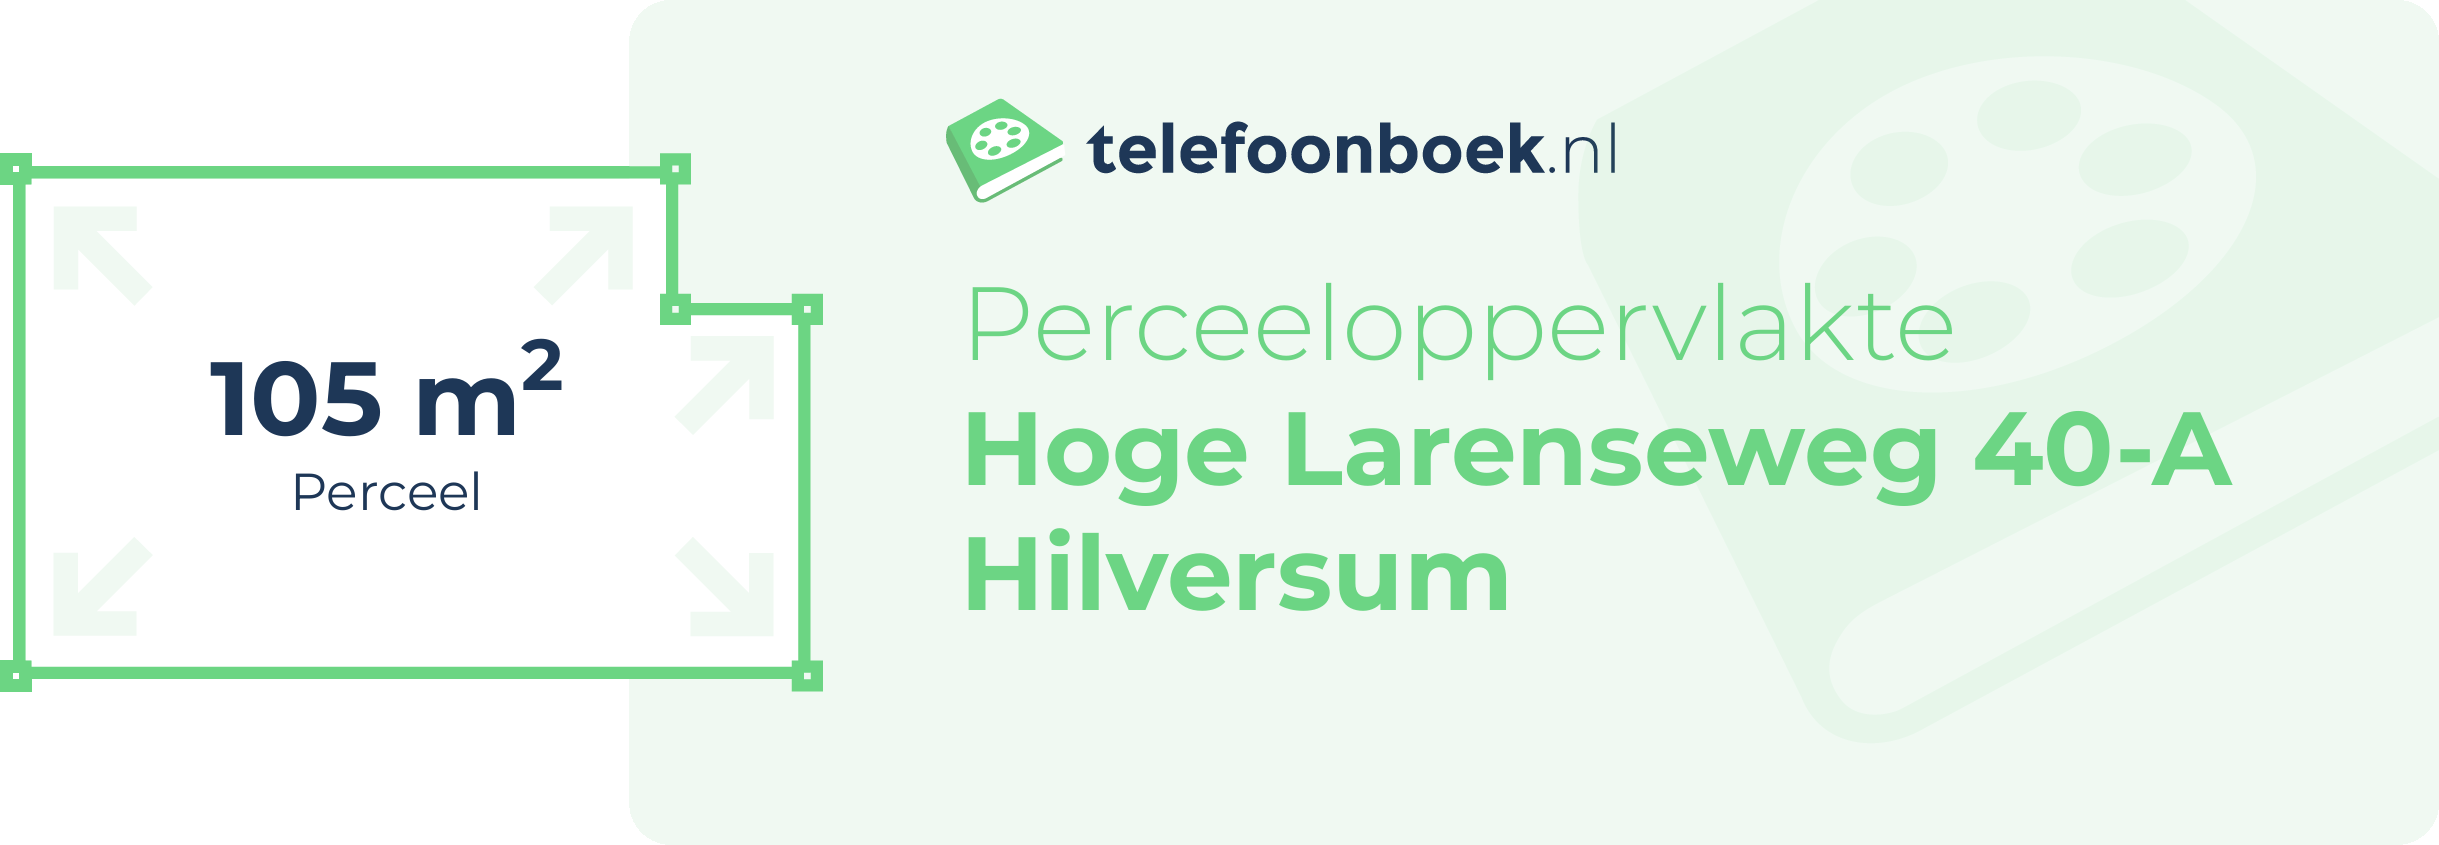 Perceeloppervlakte Hoge Larenseweg 40-A Hilversum